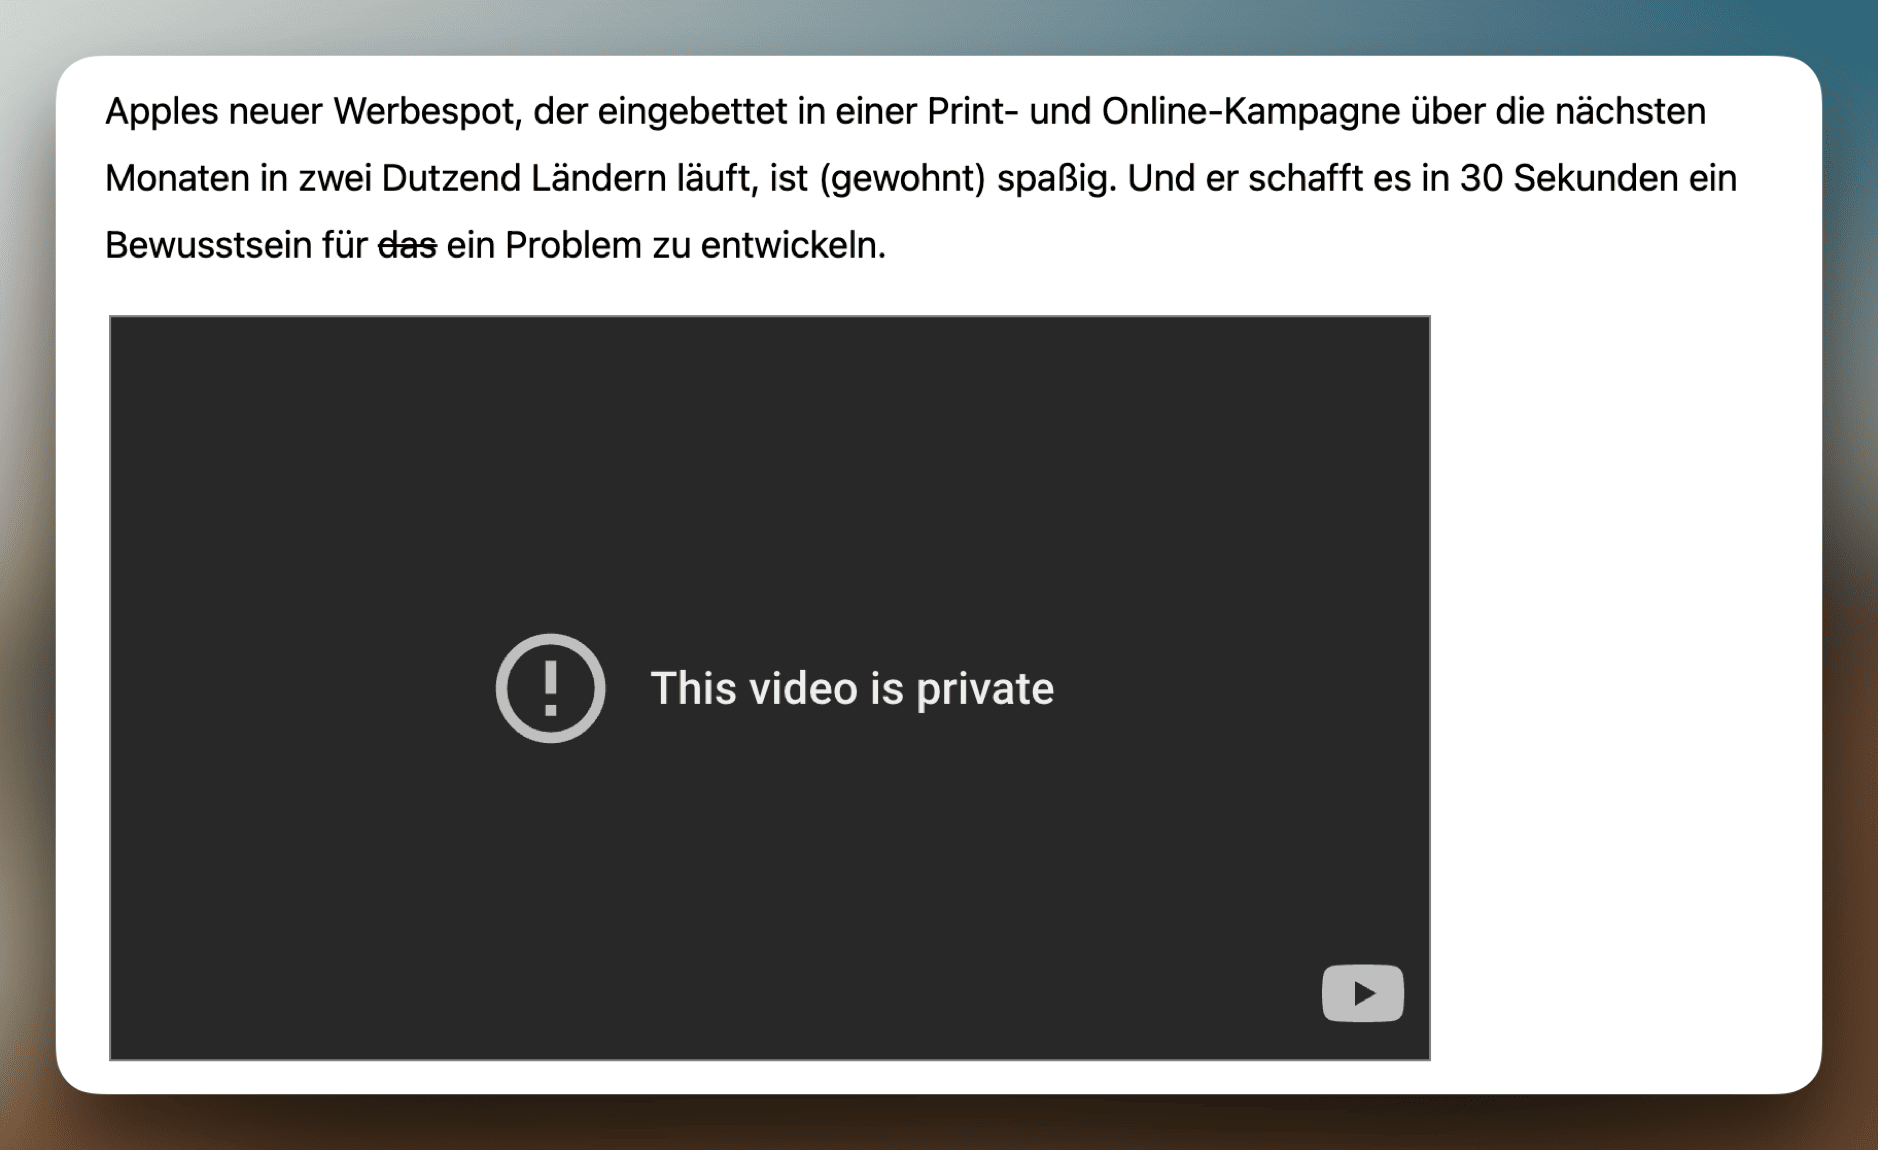 Das Bild zeigt einen Bildschirm mit einer Fehlermeldung auf Deutsch, die besagt, dass ein Video privat ist. Es gibt auch Text, der einen neuen Apple-Werbespot beschreibt, der Teil einer Print- und Online-Kampagne ist und in den nächsten Monaten in zwei Dutzend Ländern gezeigt wird.